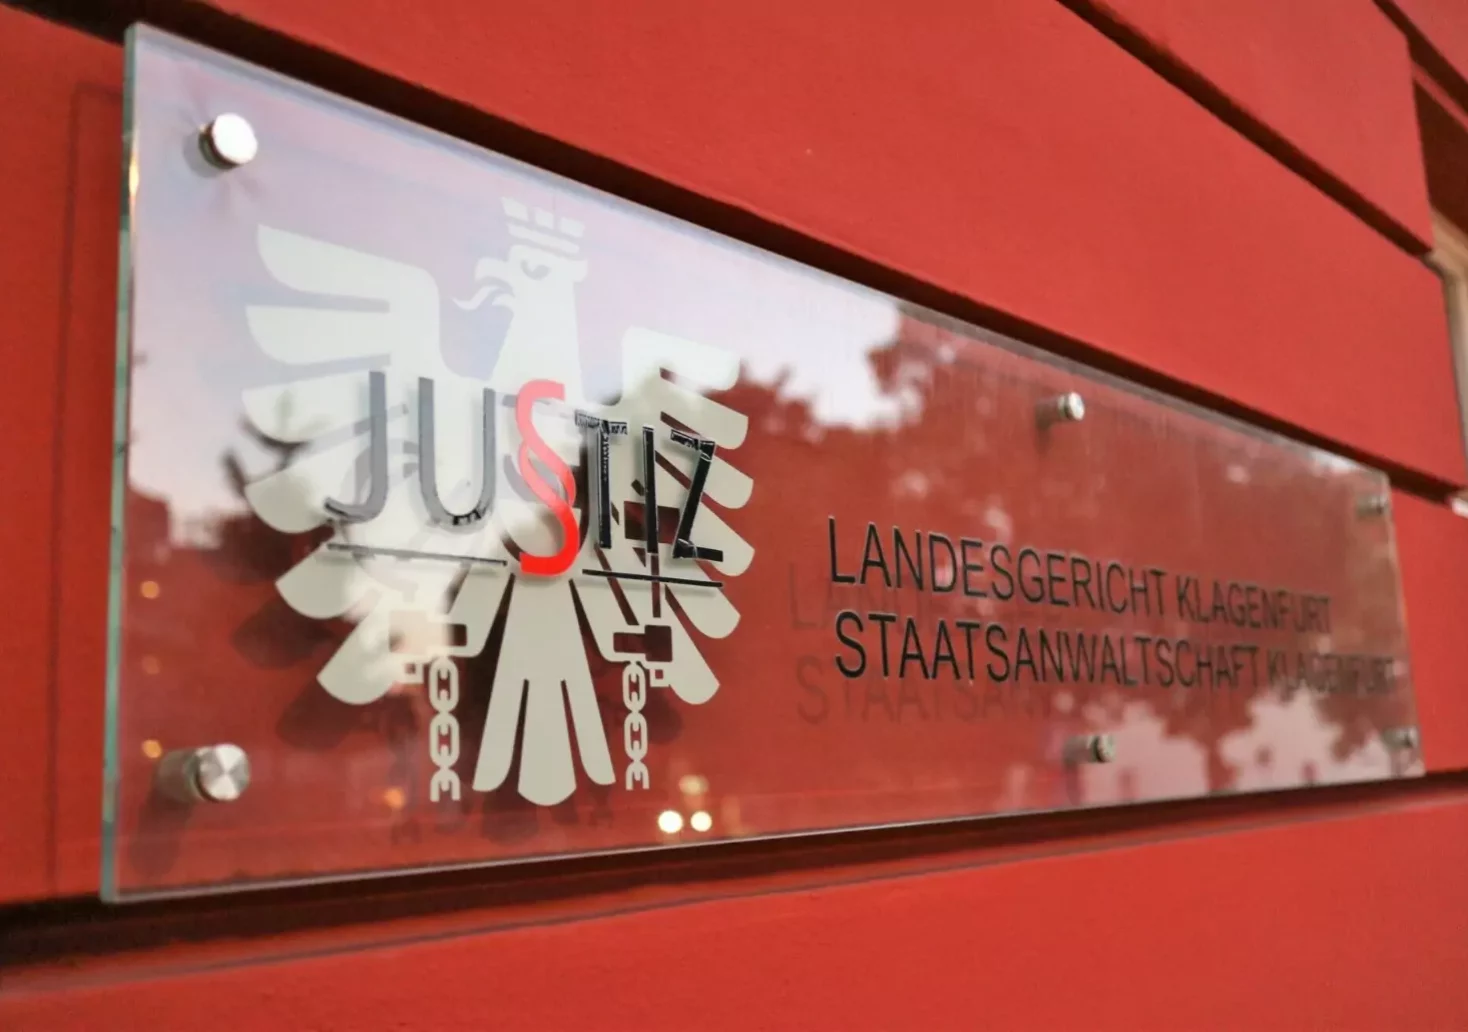 Bild auf 5min.at zeigt das Schild "Landesgericht Klagenfurt".